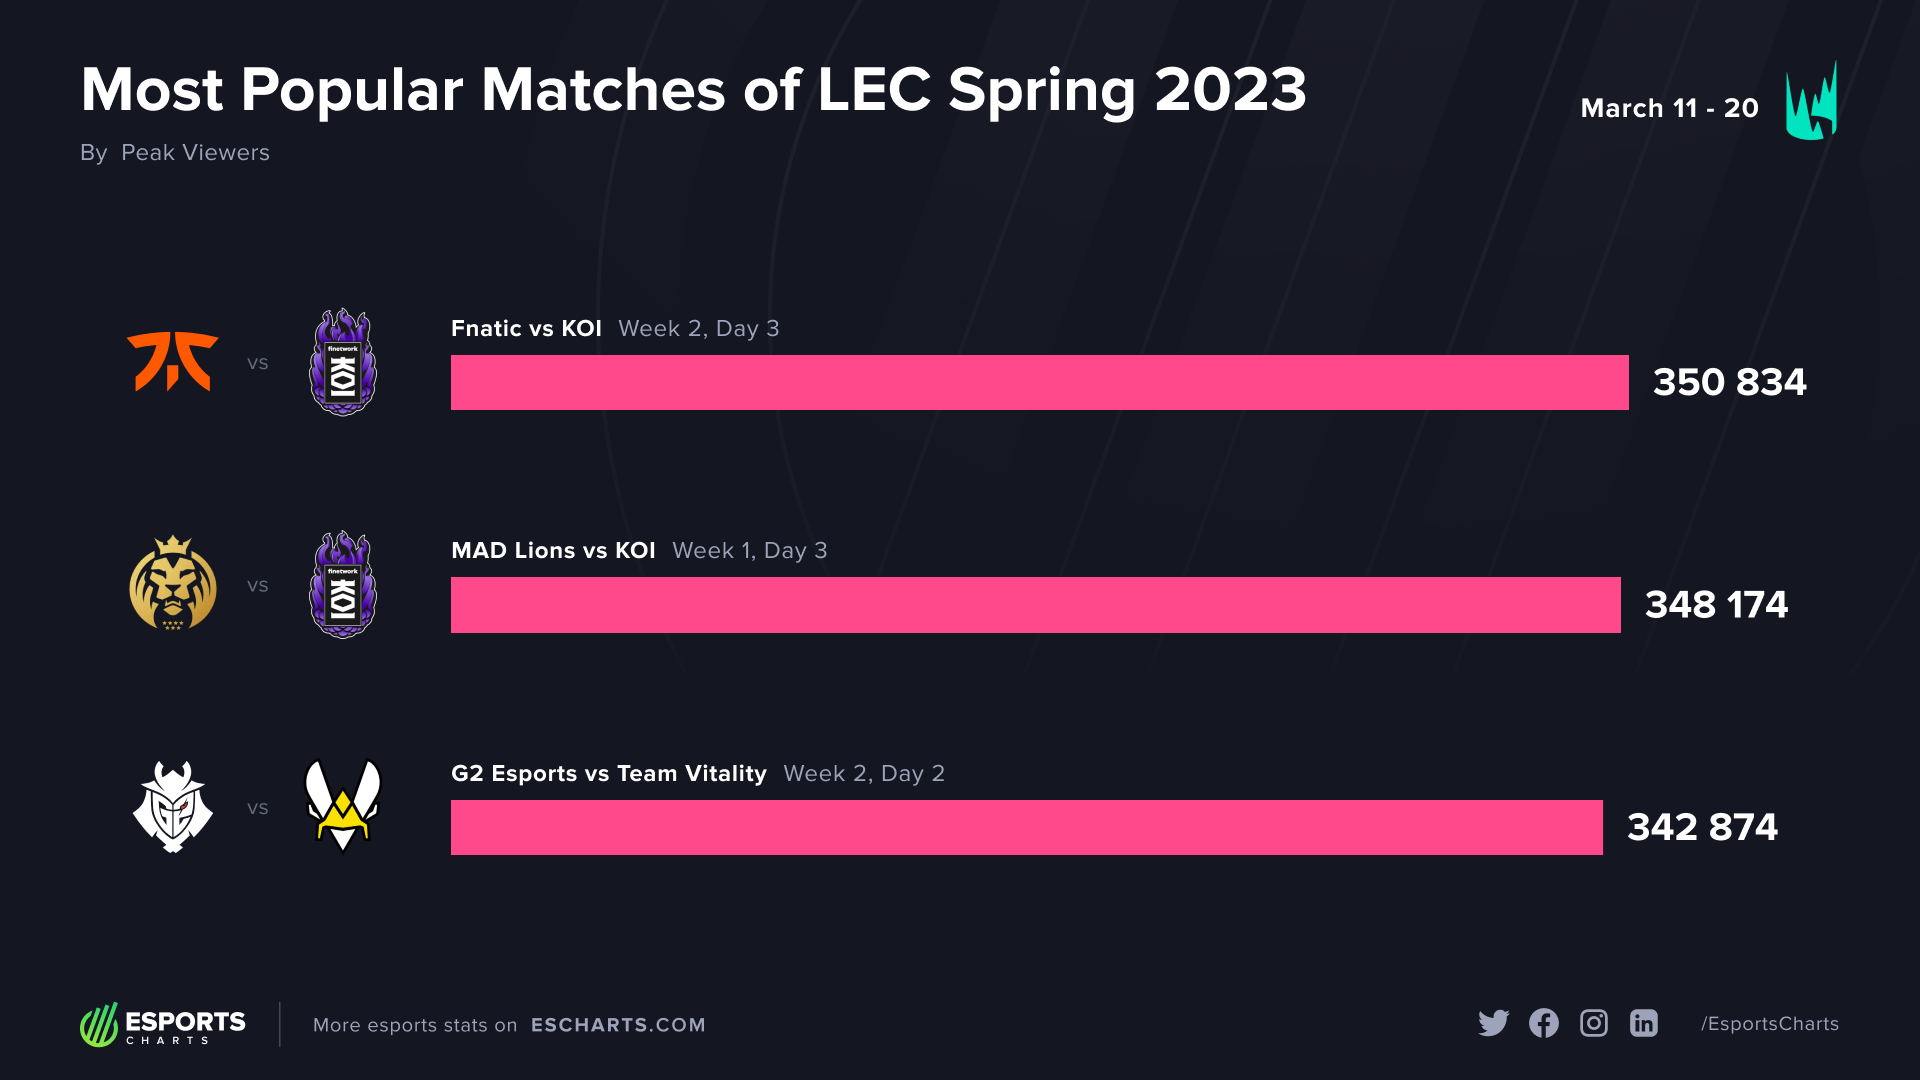 Meest populaire wedstrijden van LEC Lente 2023 - Week 1 en 2